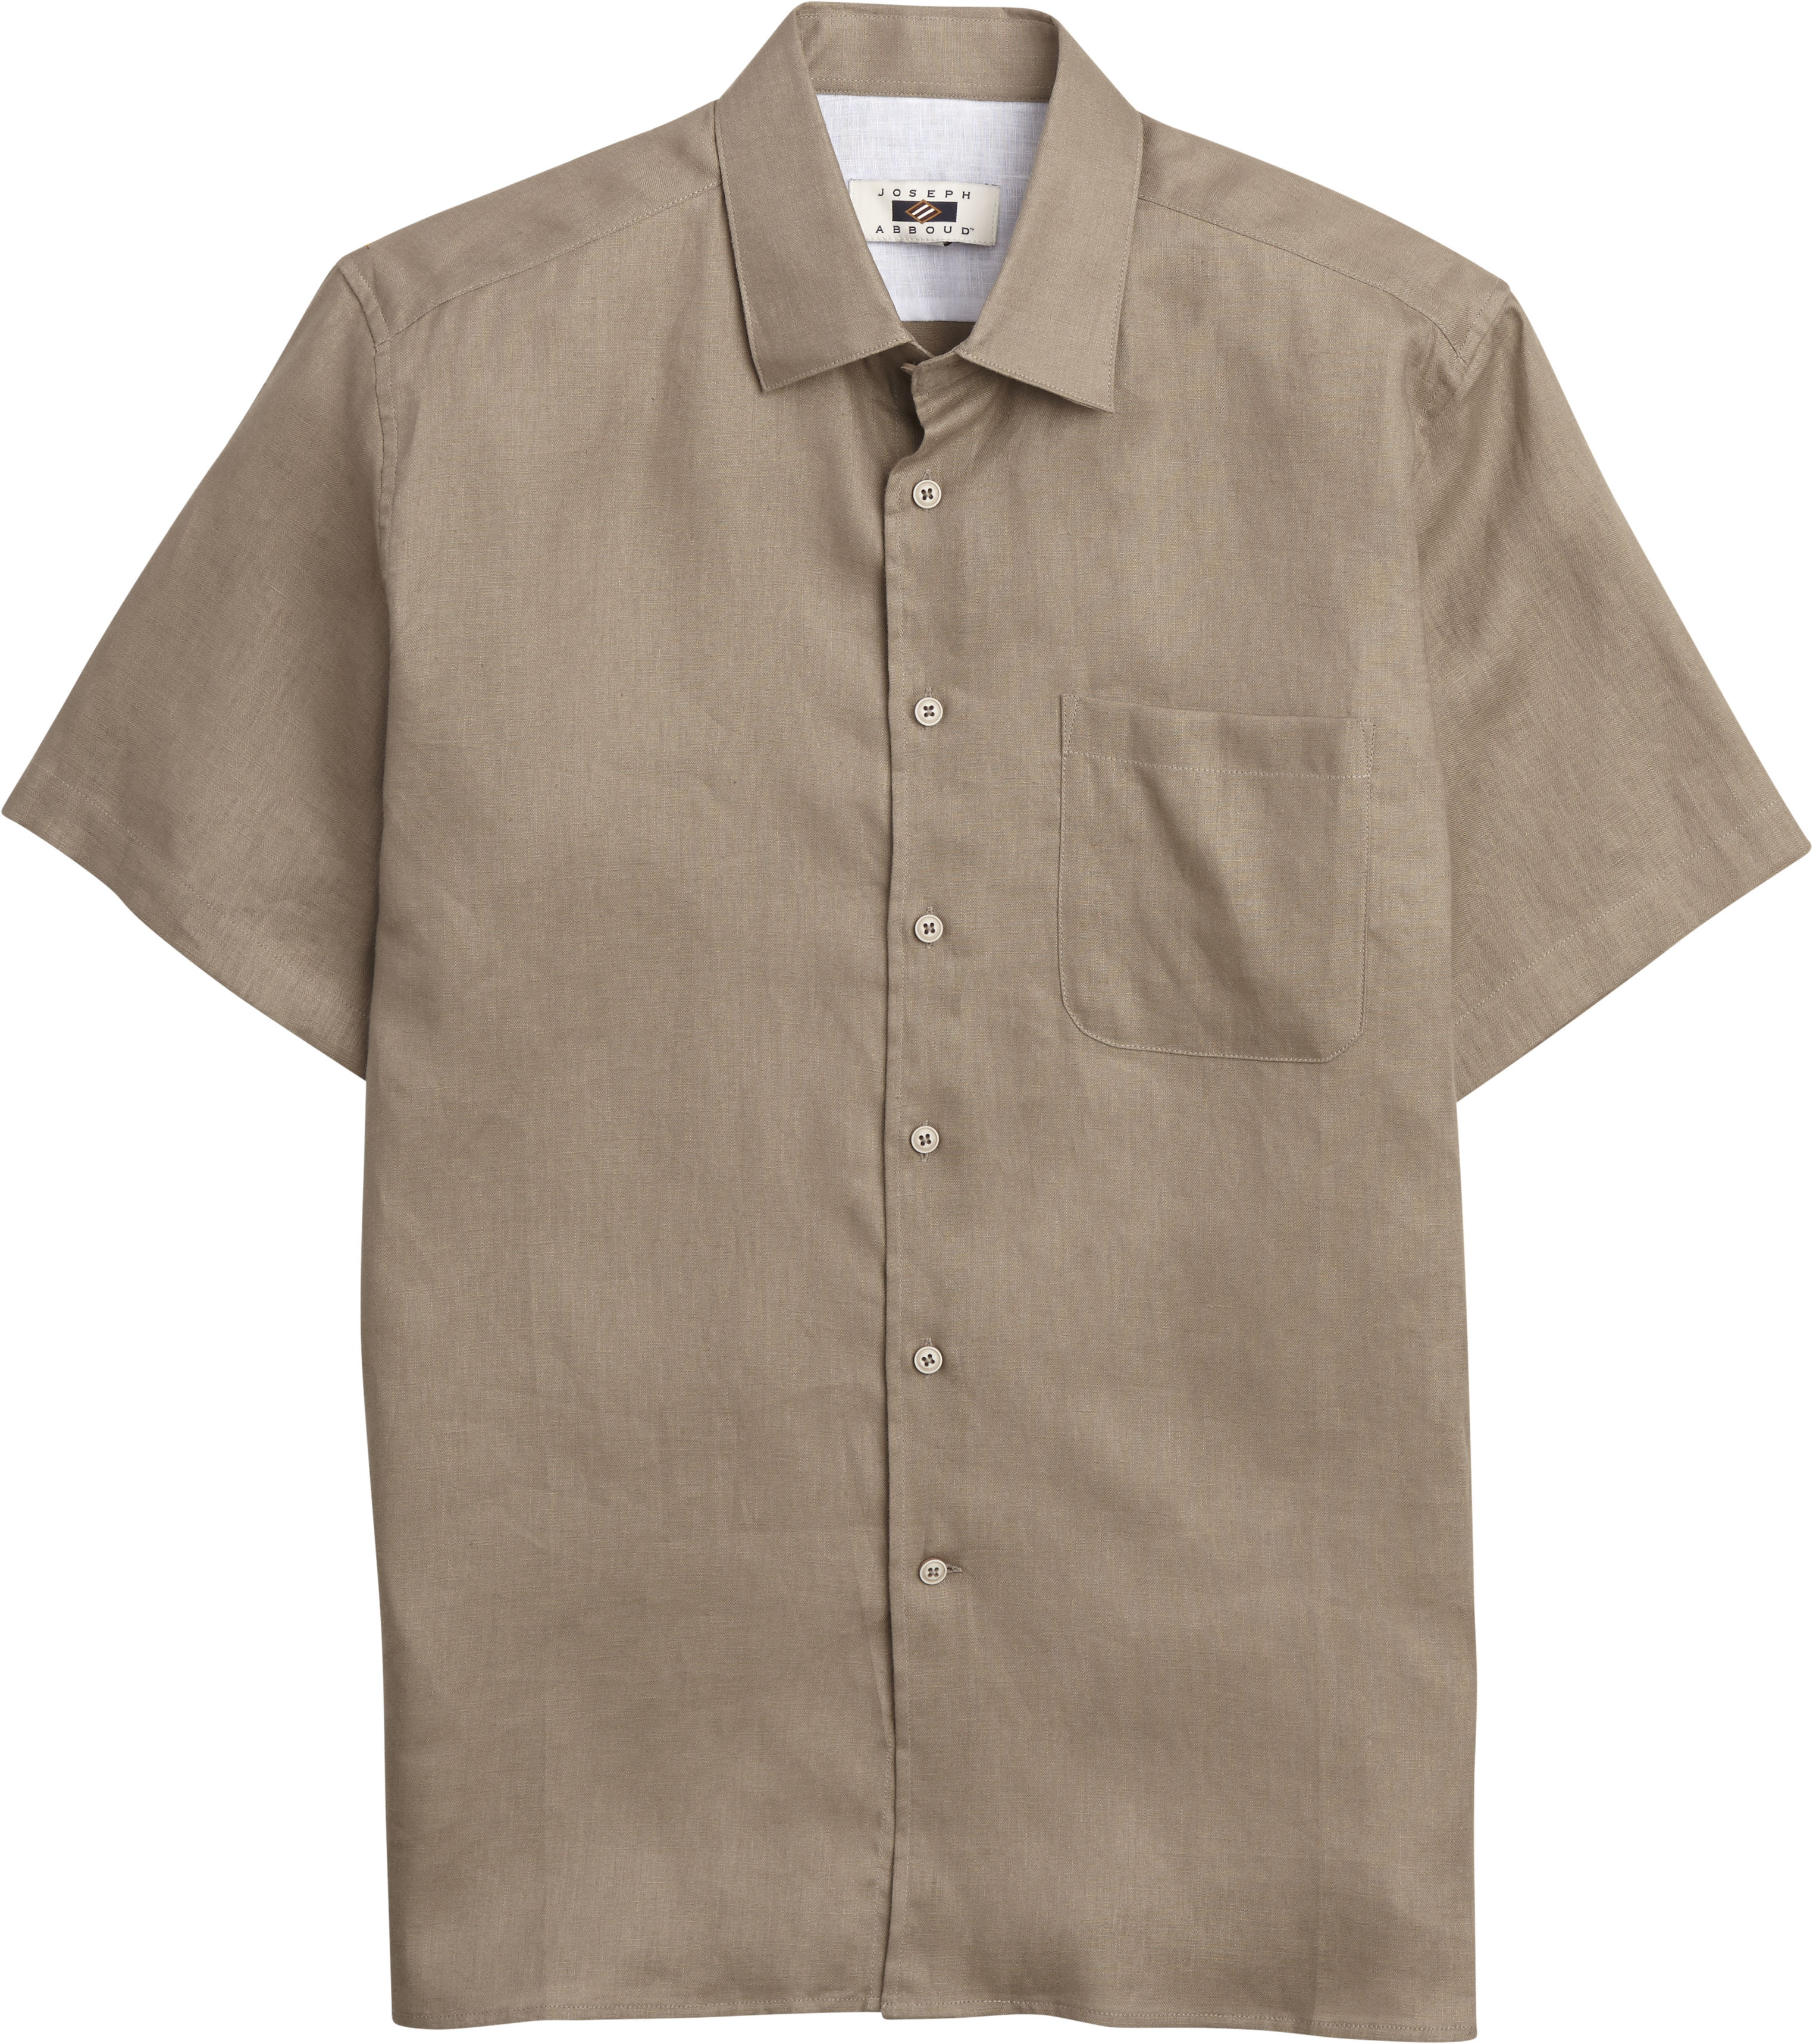 Joseph Abboud Tan Linen Camp Shirt - Men's Sale | Men's Wearhouse